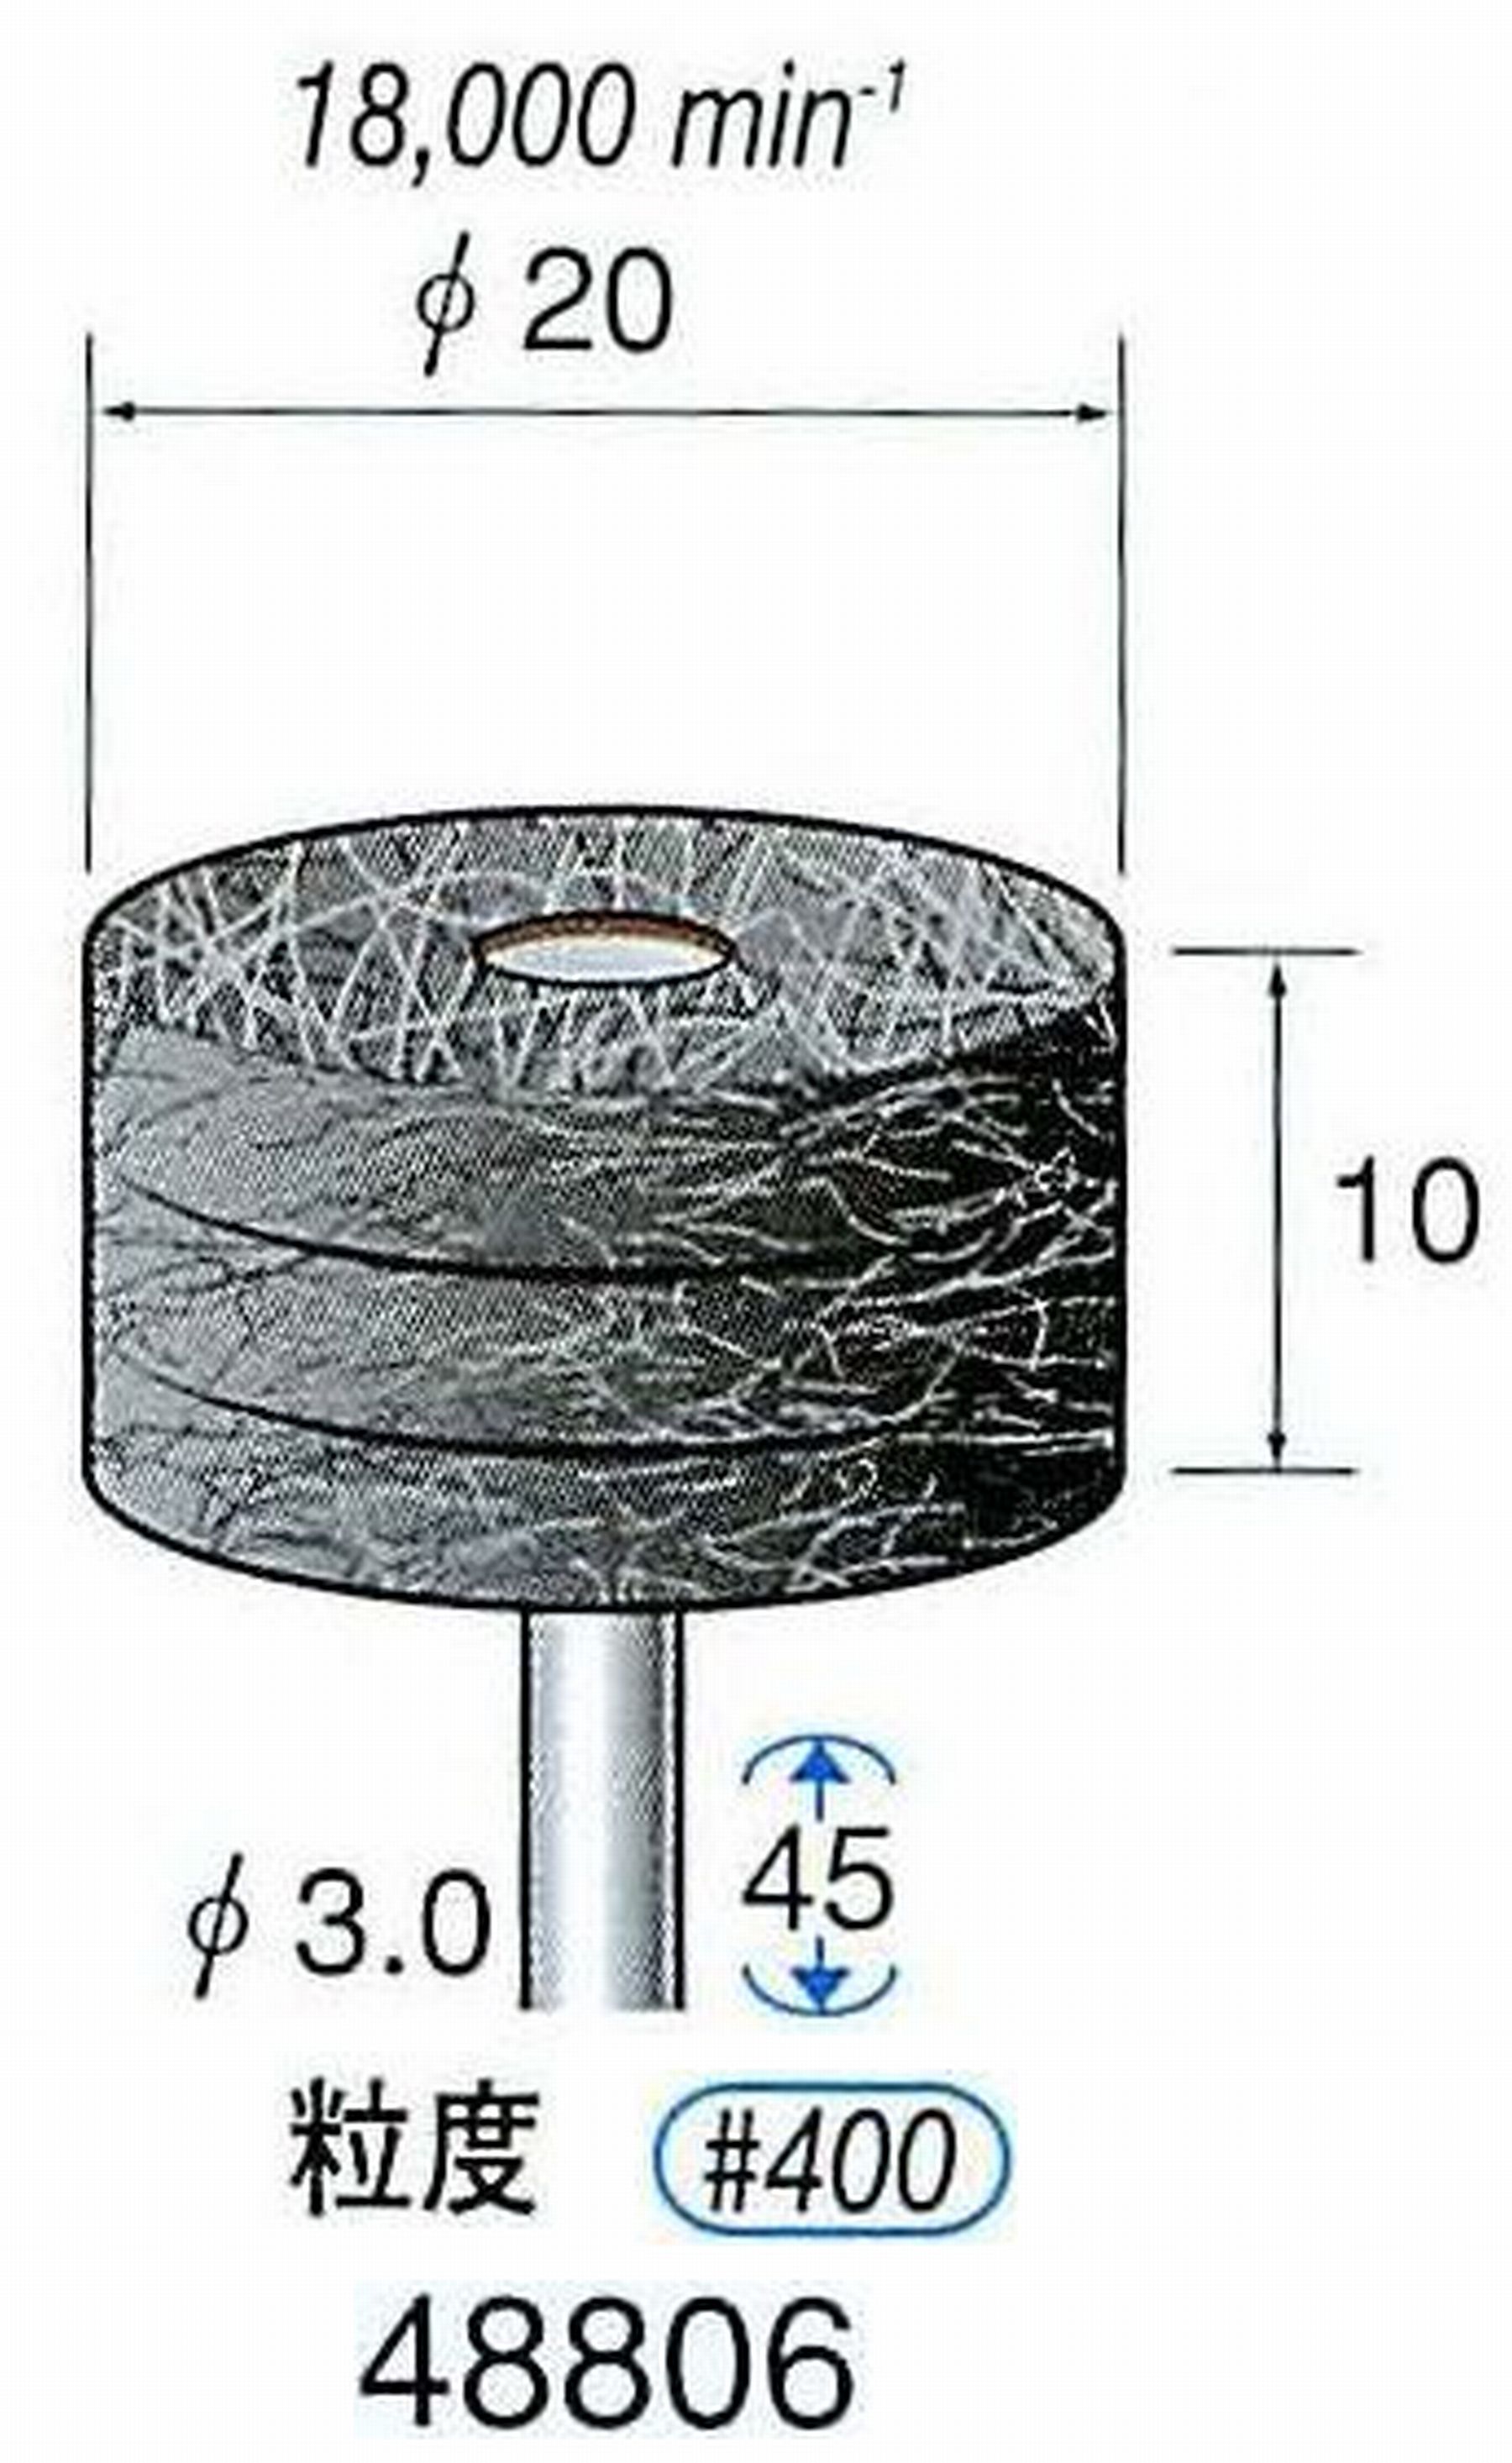 ナカニシ/NAKANISHI スポンジサンダー(研磨砥粒入り) 軸径(シャンク)φ3.0mm 48806